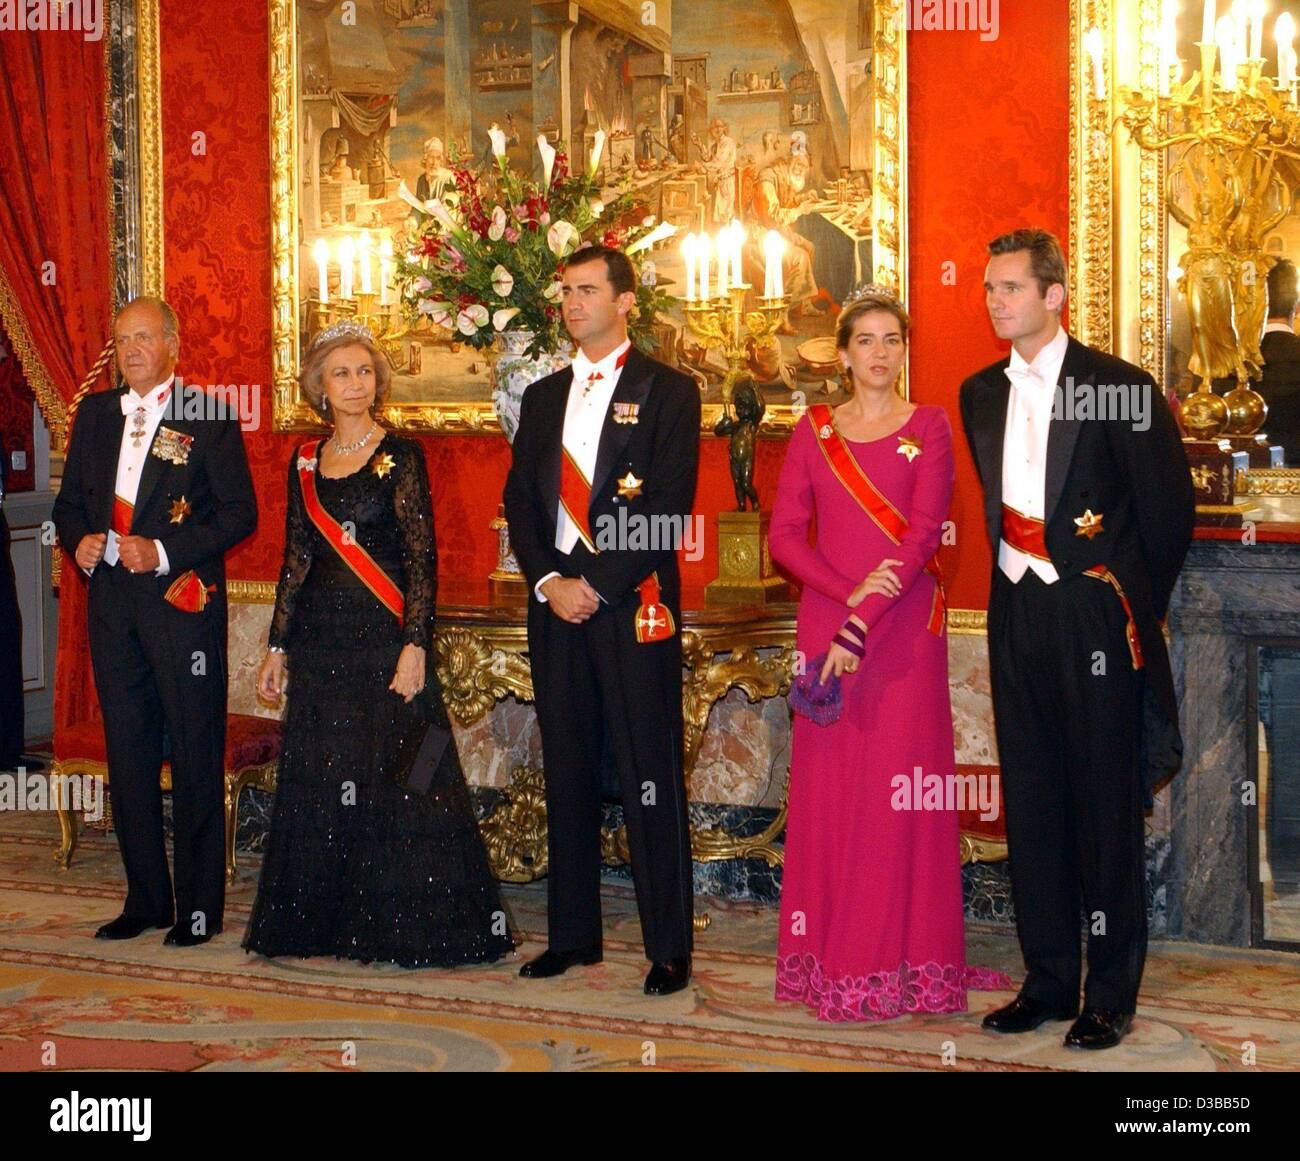 (Dpa) - von L: König Juan Carlos von Spanien, Königin Sofia, Kronprinz Felipe, Prinzessin Cristina und ihr Mann Inaki Urdangarin pose vor einem Gala-Dinner für den Bundespräsidenten im königlichen Palast in Madrid, 11. November 2002. Der Bundespräsident wurde auf einer dreitägigen Staatsbesuch in Spanien und die h Stockfoto